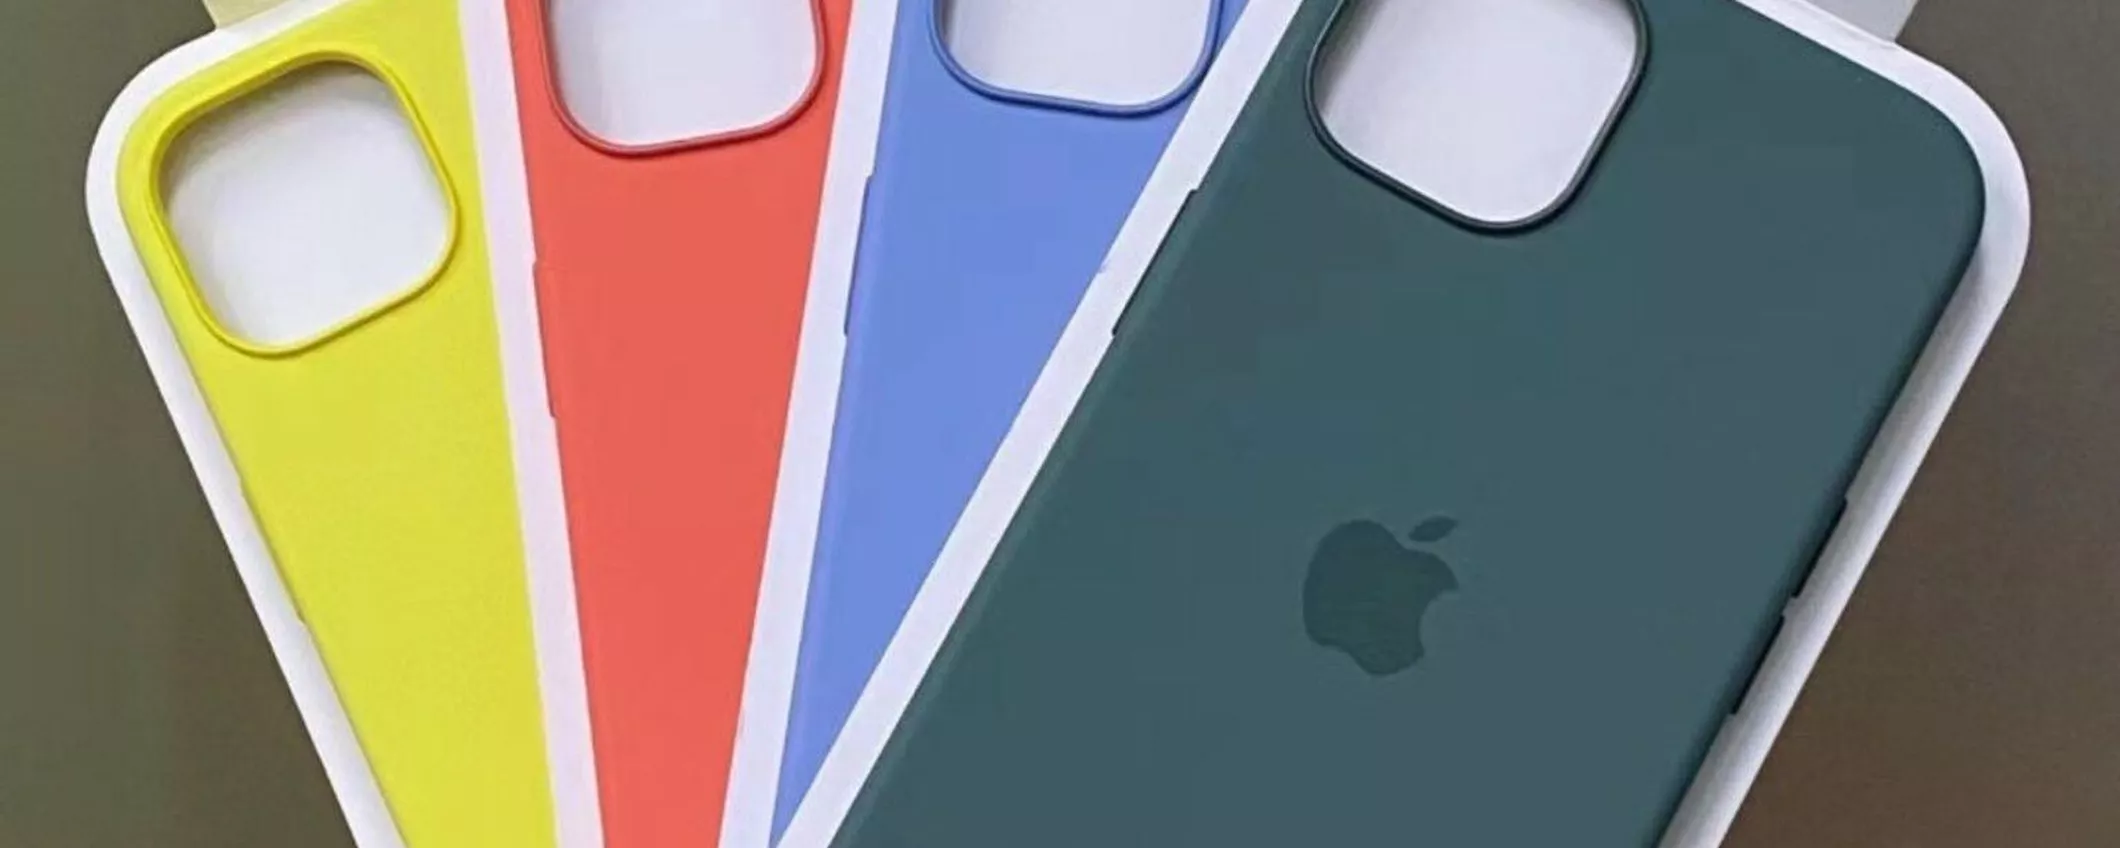 Evento Apple 8 marzo: in arrivo nuove custodie per iPhone 13